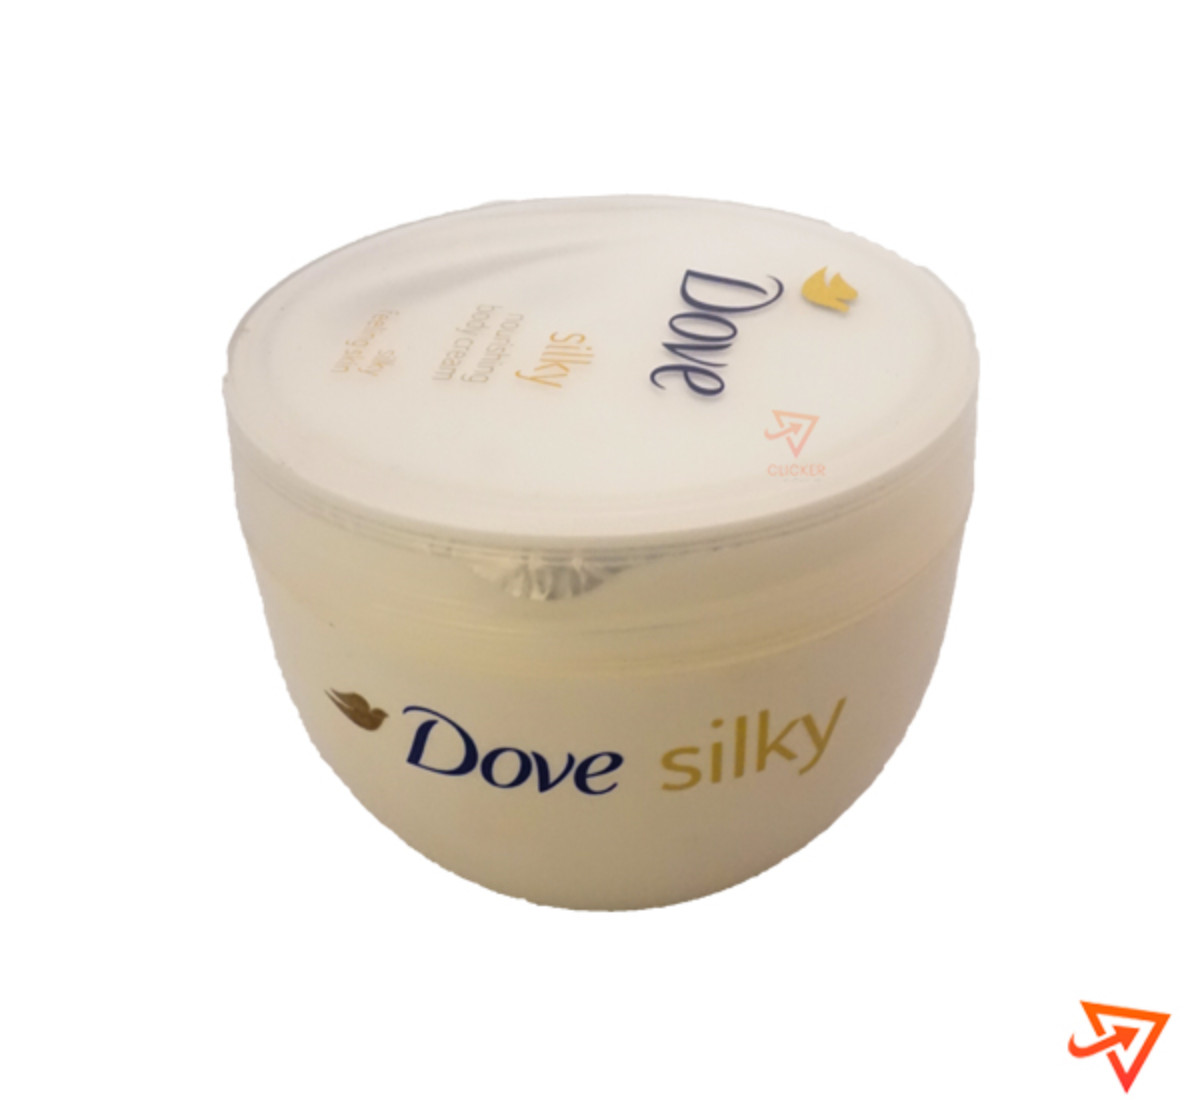 Clicker product 300ml DOVE silky body cream 1063